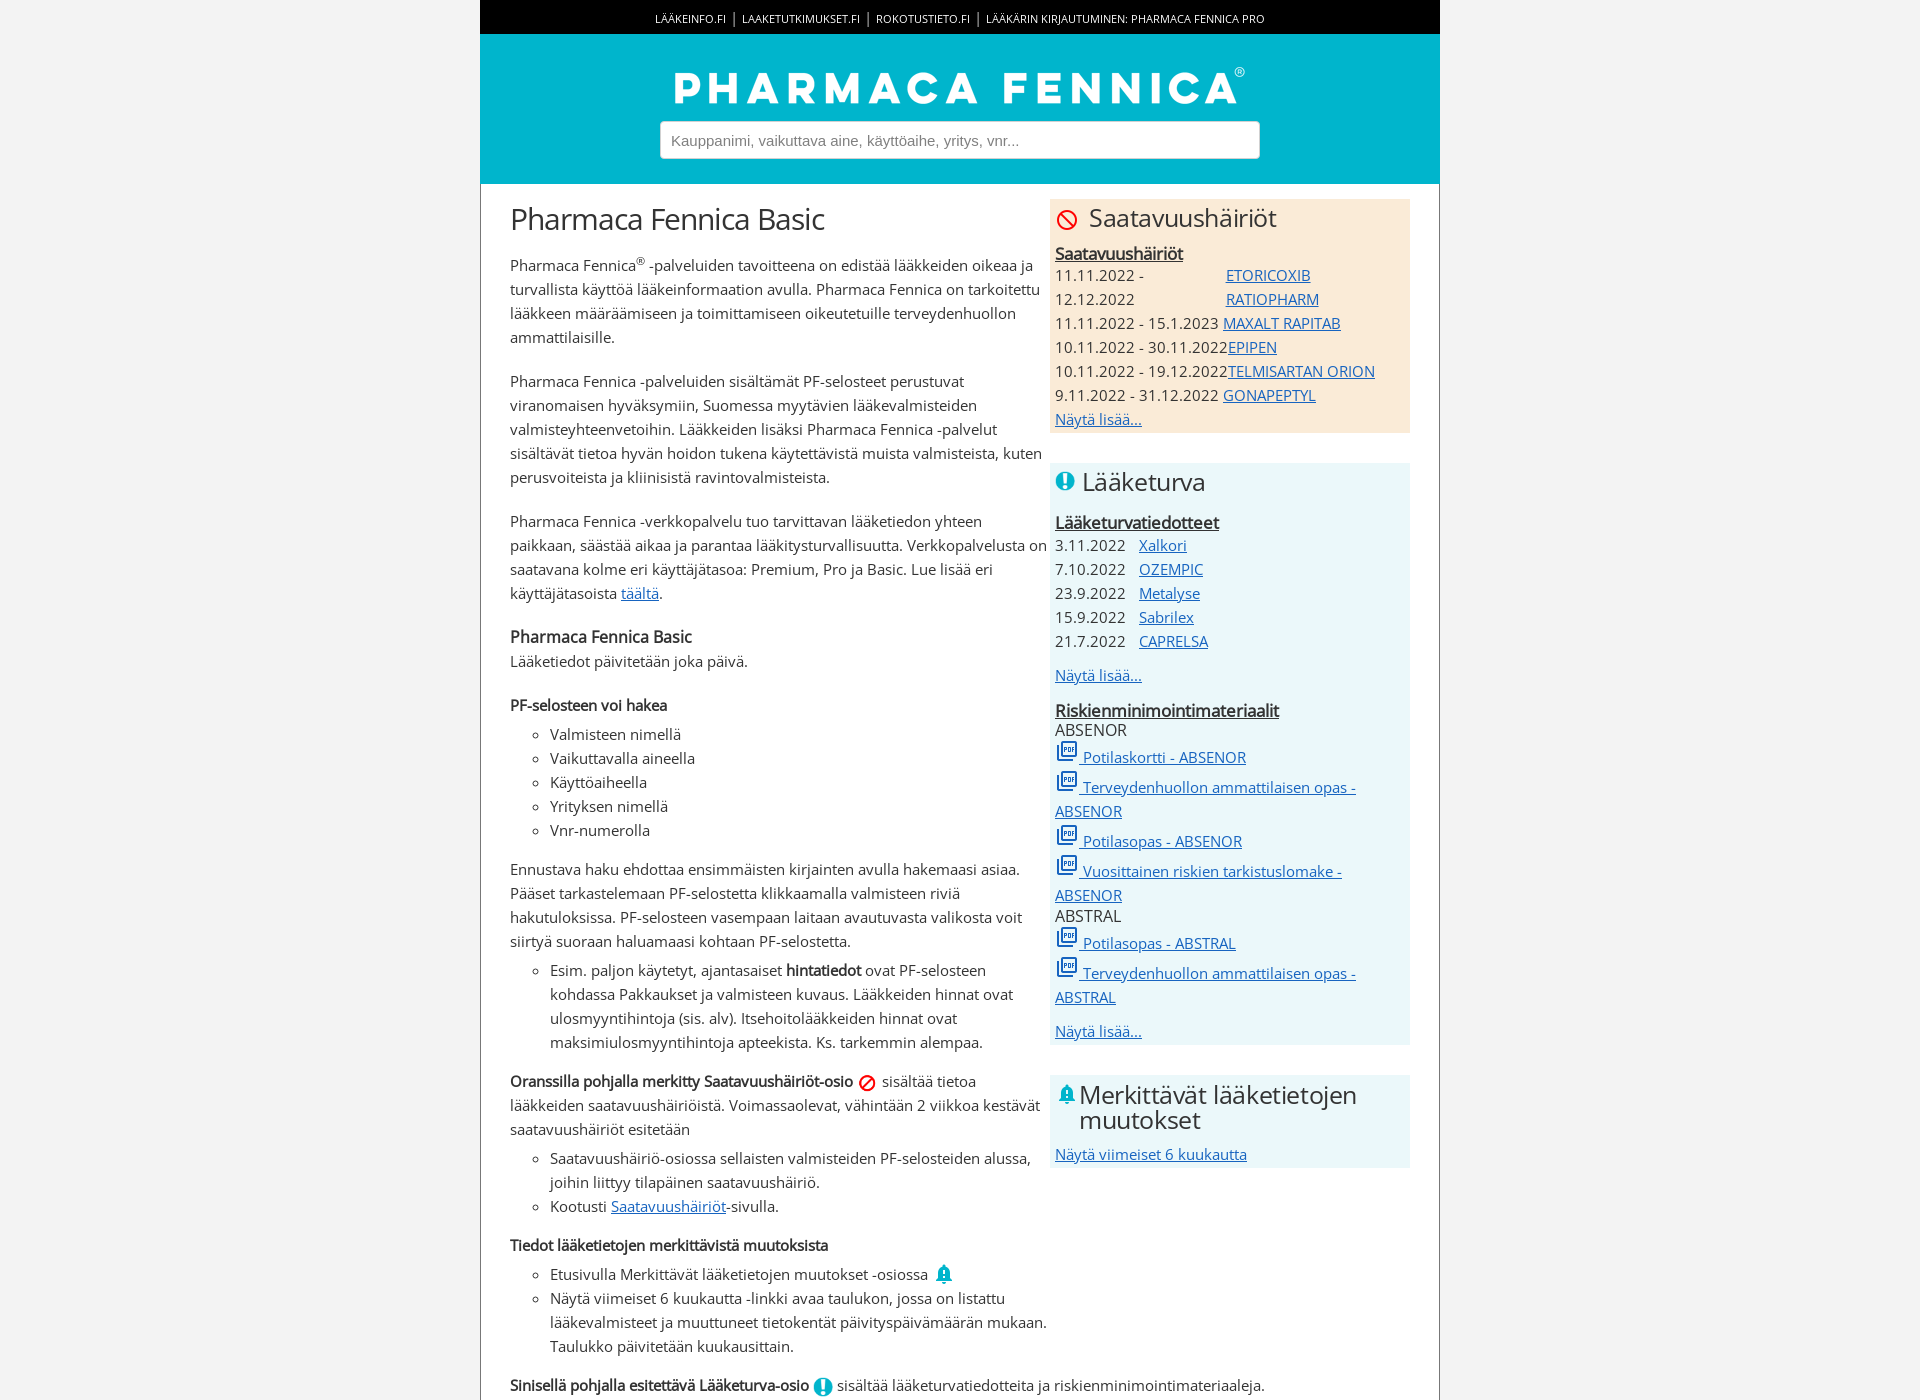 Näyttökuva pharmacafennica.fi